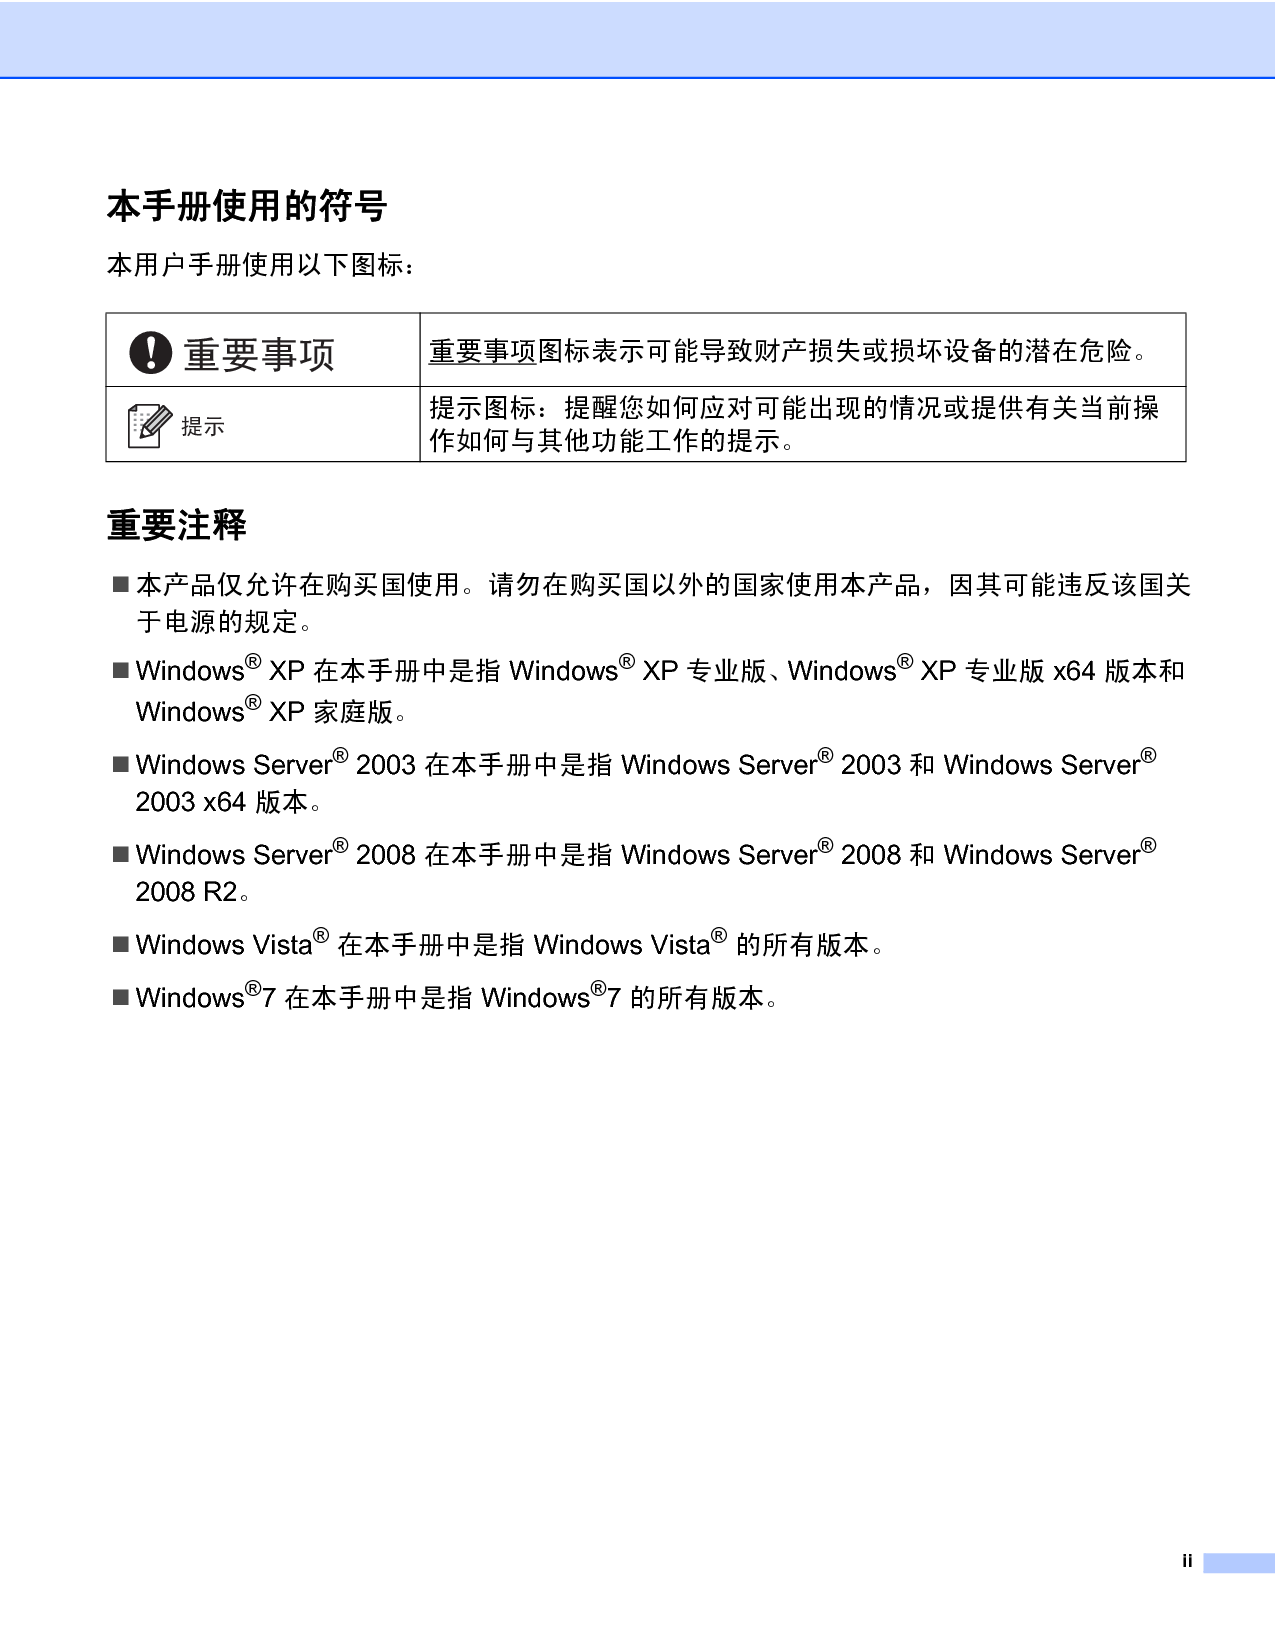 联想 Lenovo LJ2650DN 网络用户手册 第2页